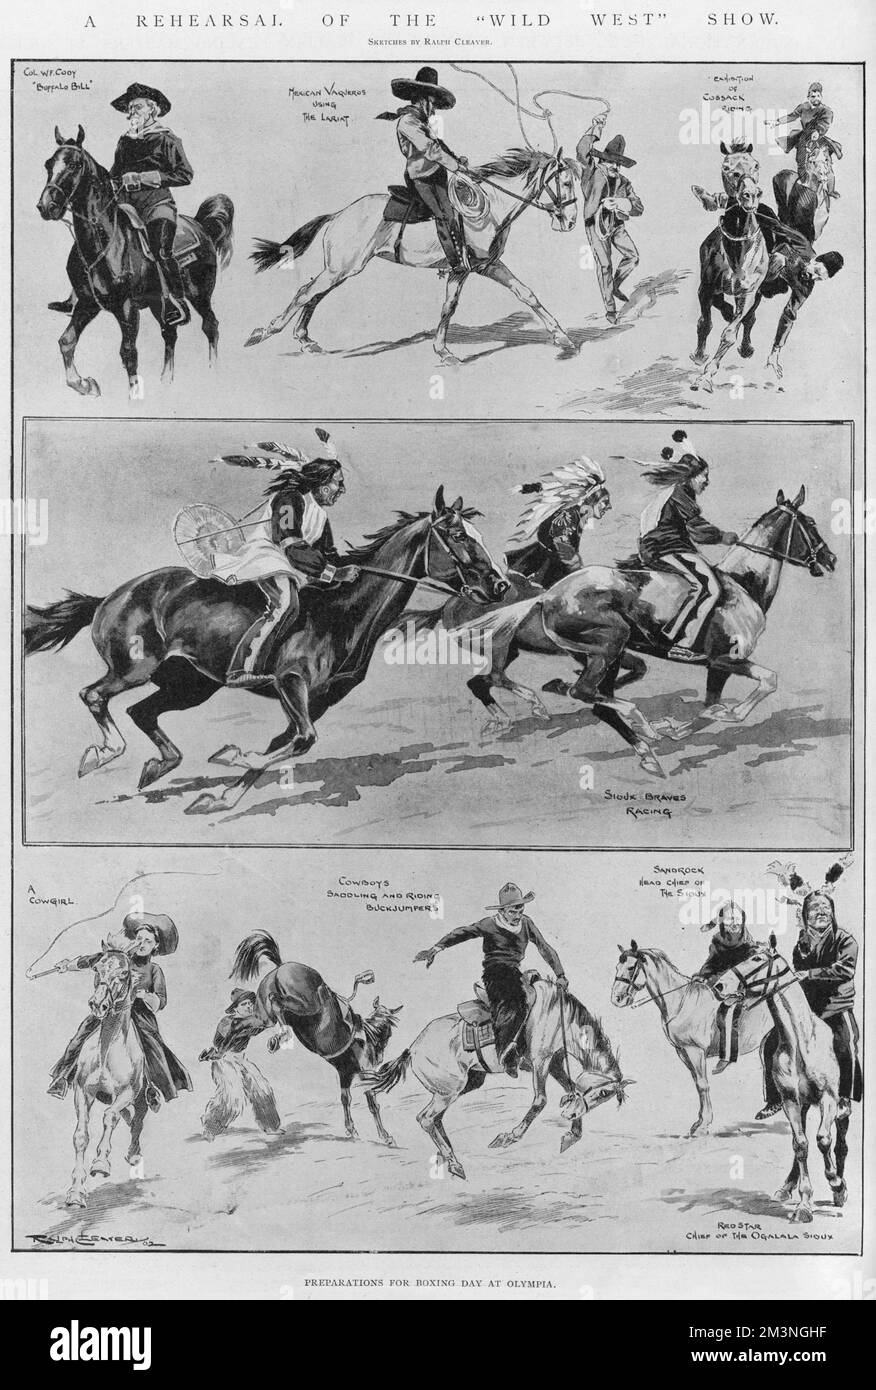 Eine Reihe von Skizzen von Ralph Cleaver über die Proben für Colonel Codys Show „Wild West“ in Olympia, darunter Rennpferde der Sioux, Kuhmädchen und Cowboys, mexikanische vaqueros mit Lassos und eine Ausstellung über kosakenreiten. Datum: 1902 Stockfoto